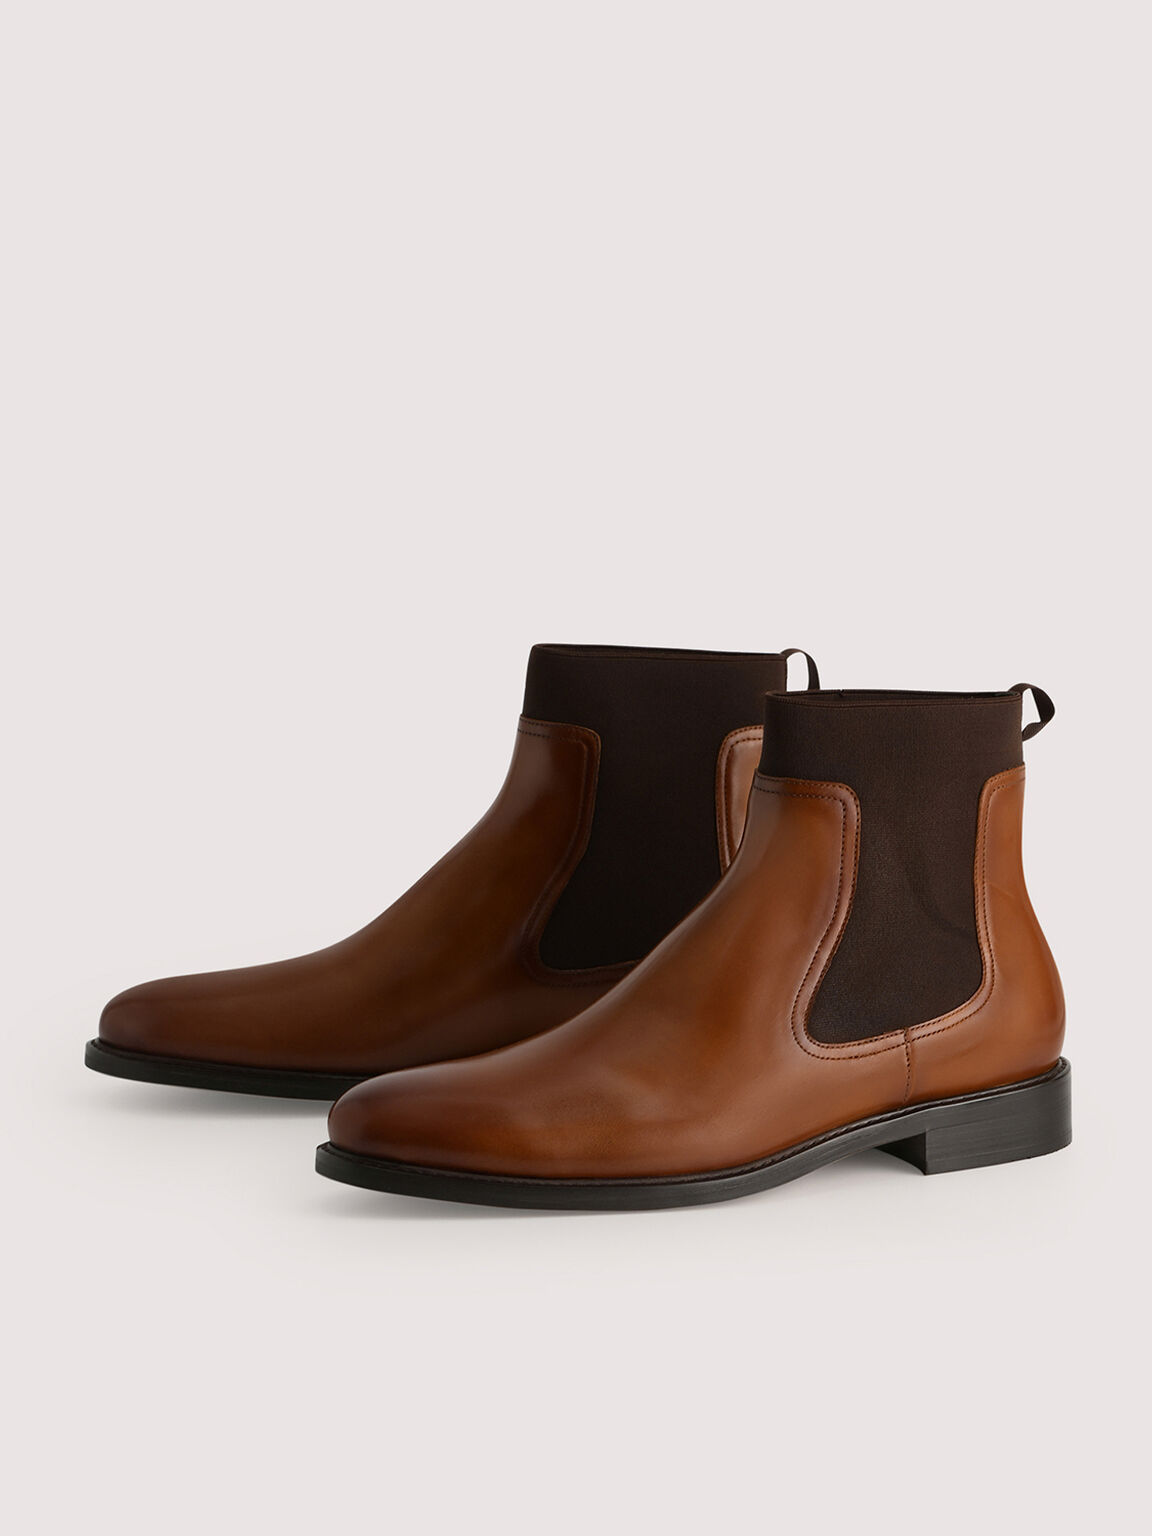 Leather Chelsea Boots, Cognac, hi-res